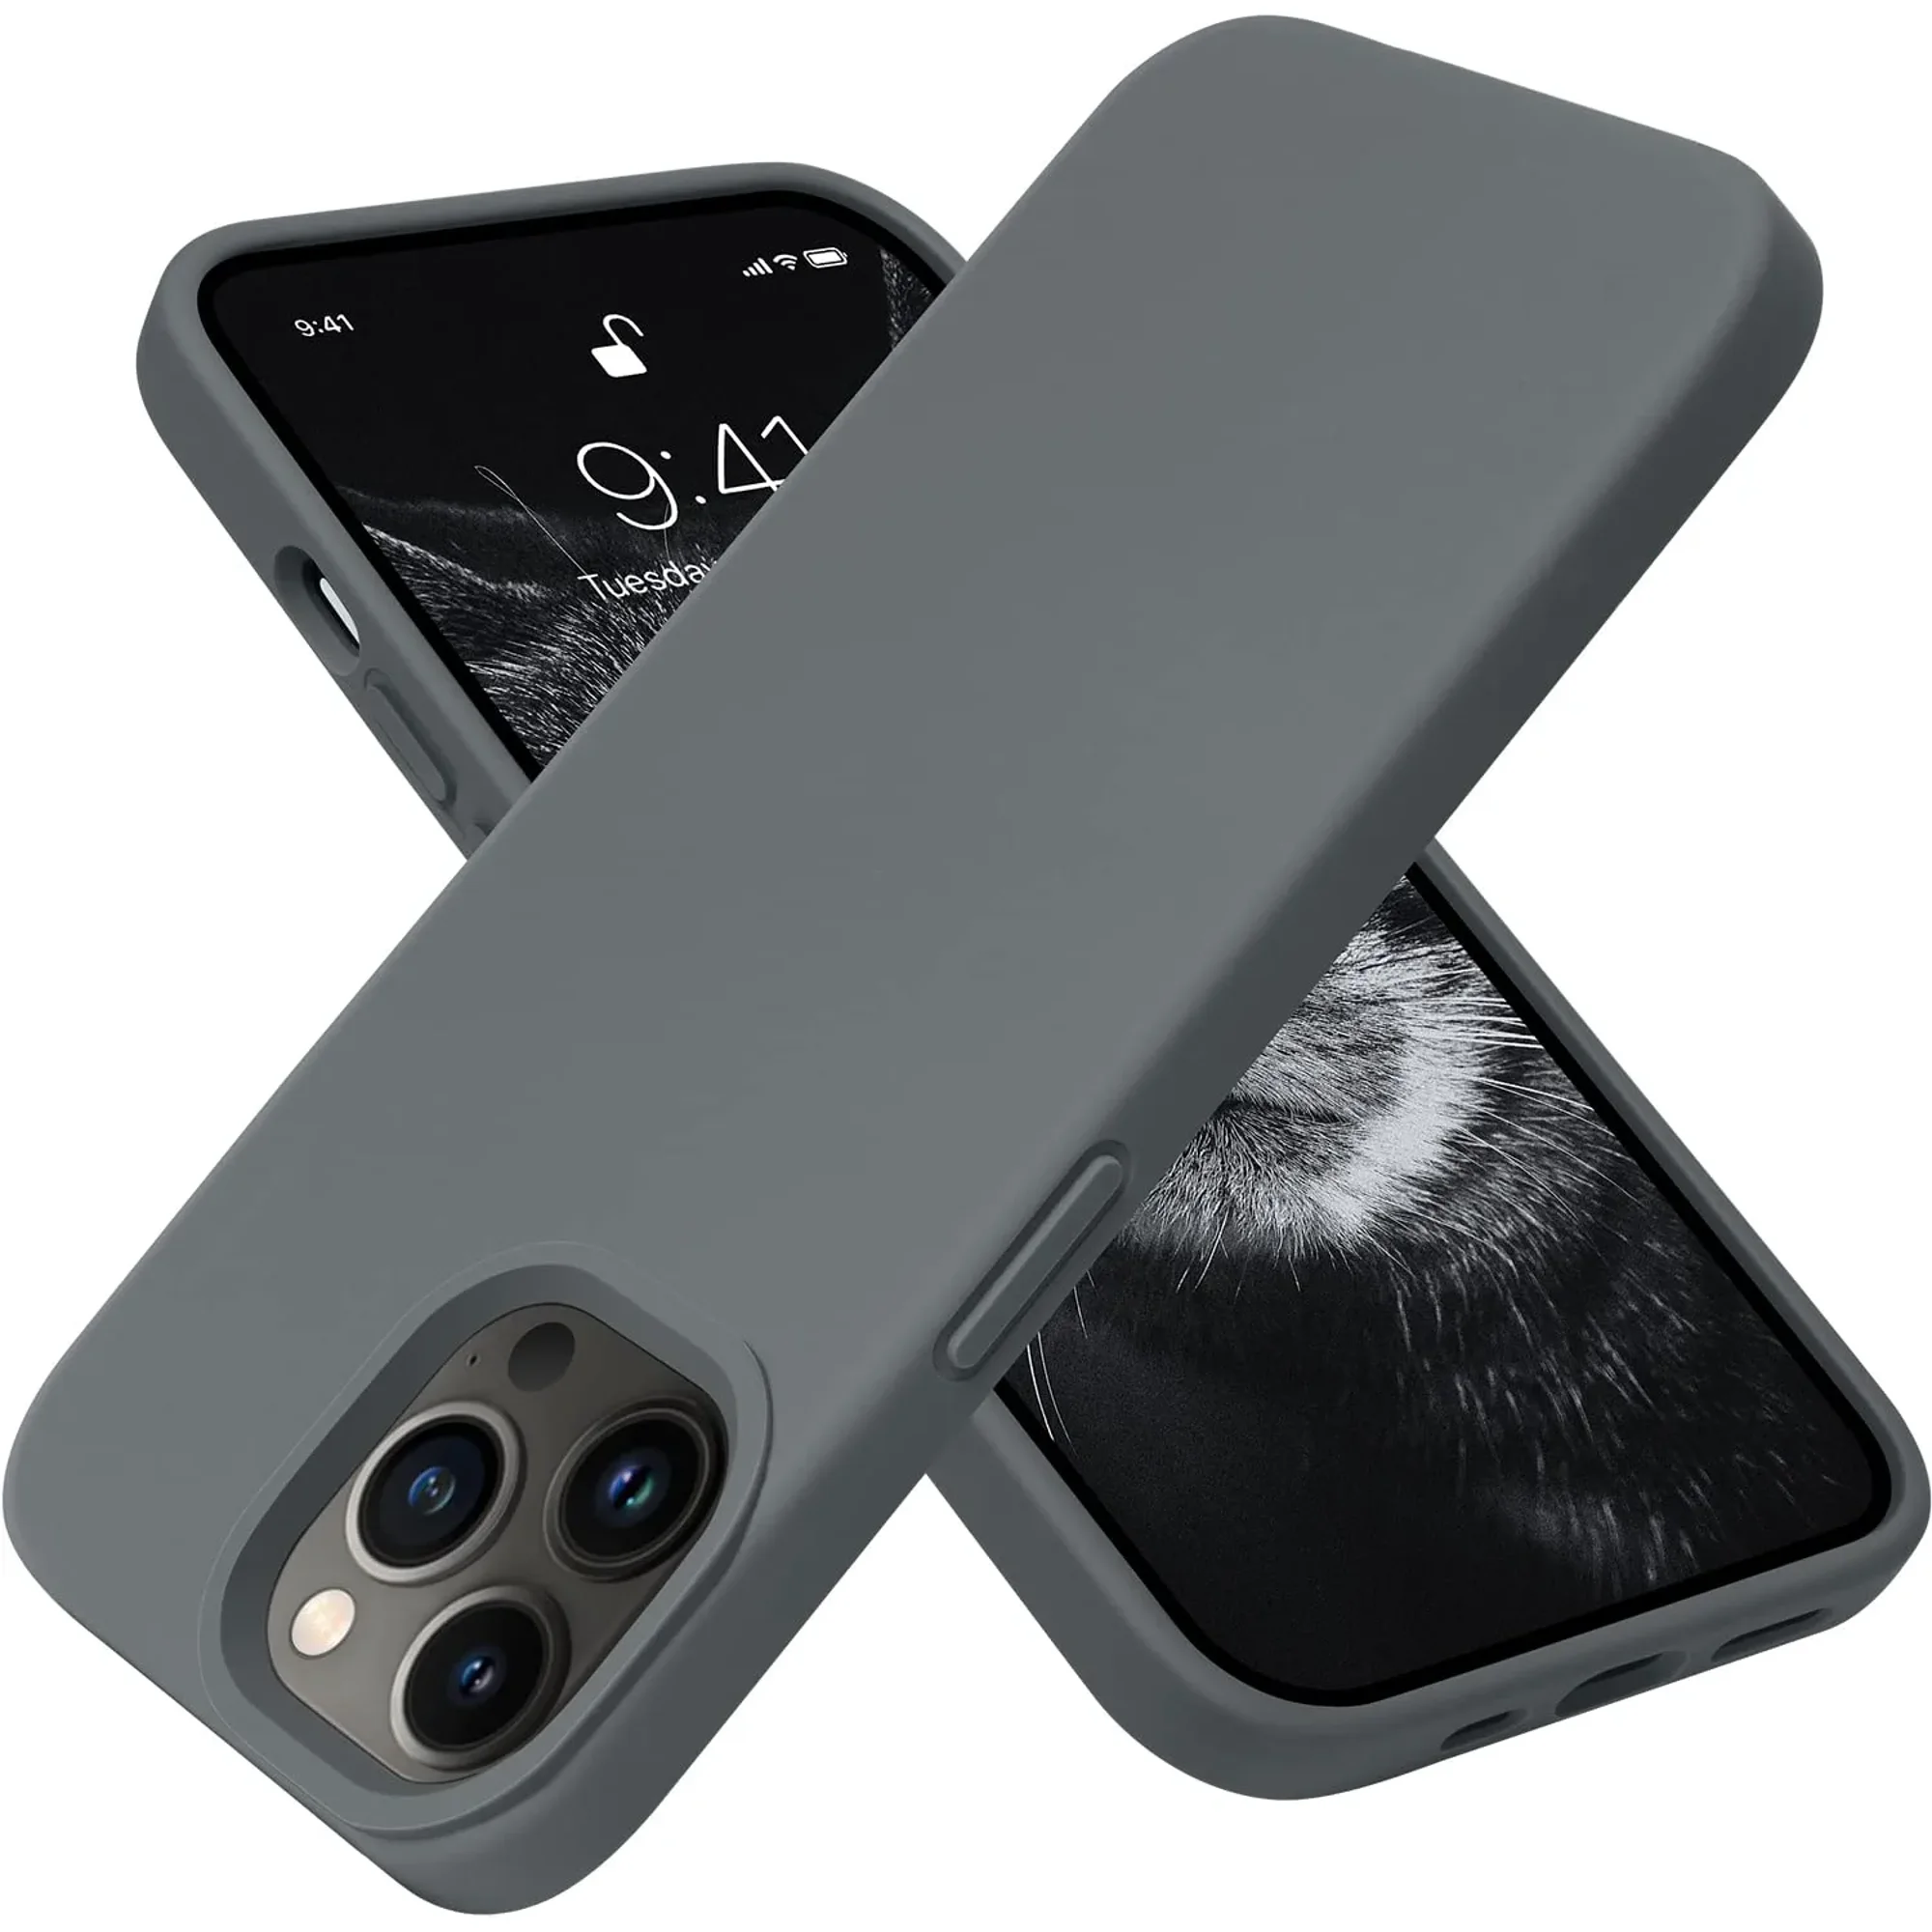 Apple presenta nuevas fundas de piel y silicona para el iPhone SE